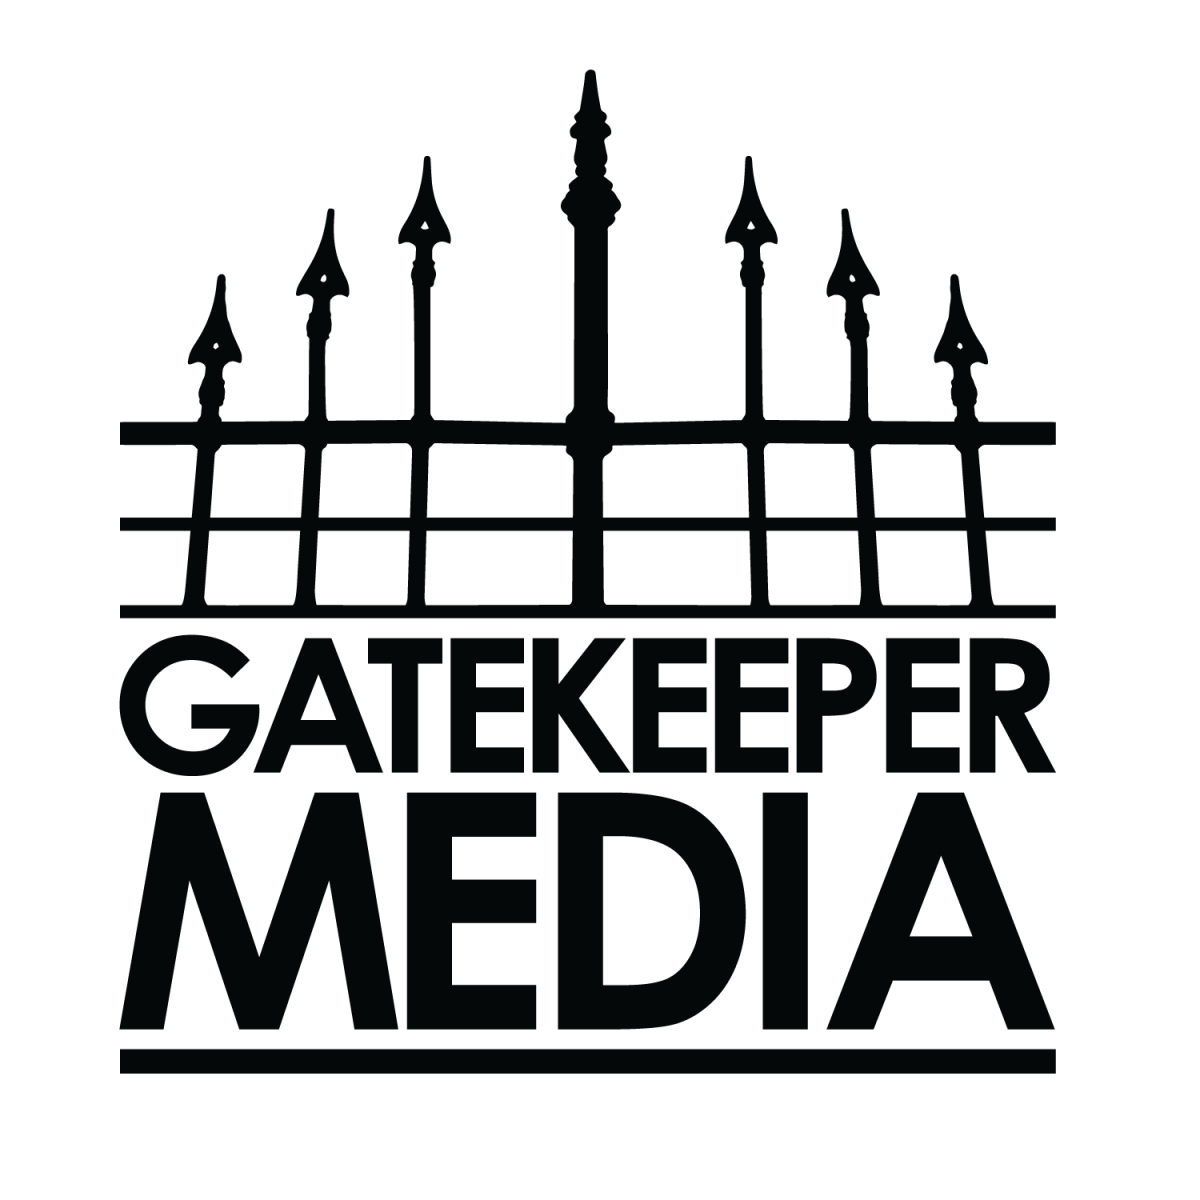 gatekeeper_media_logo_large_1.png